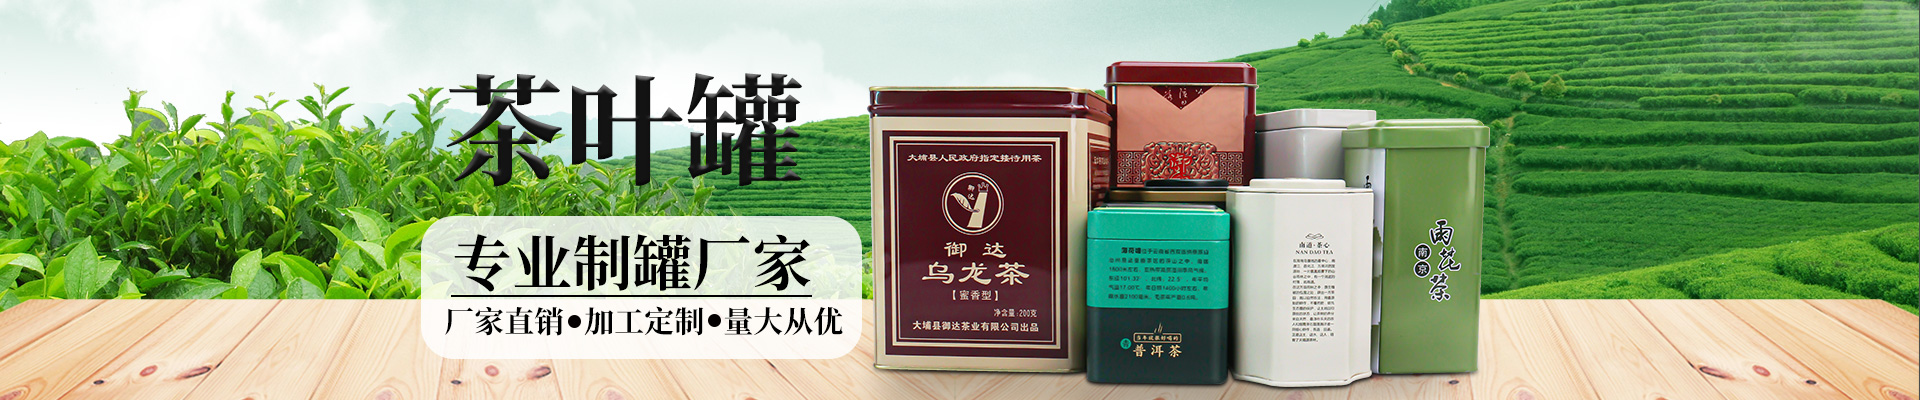 茶叶铁盒茶叶JS金沙(中国)股份有限公司官网小横图